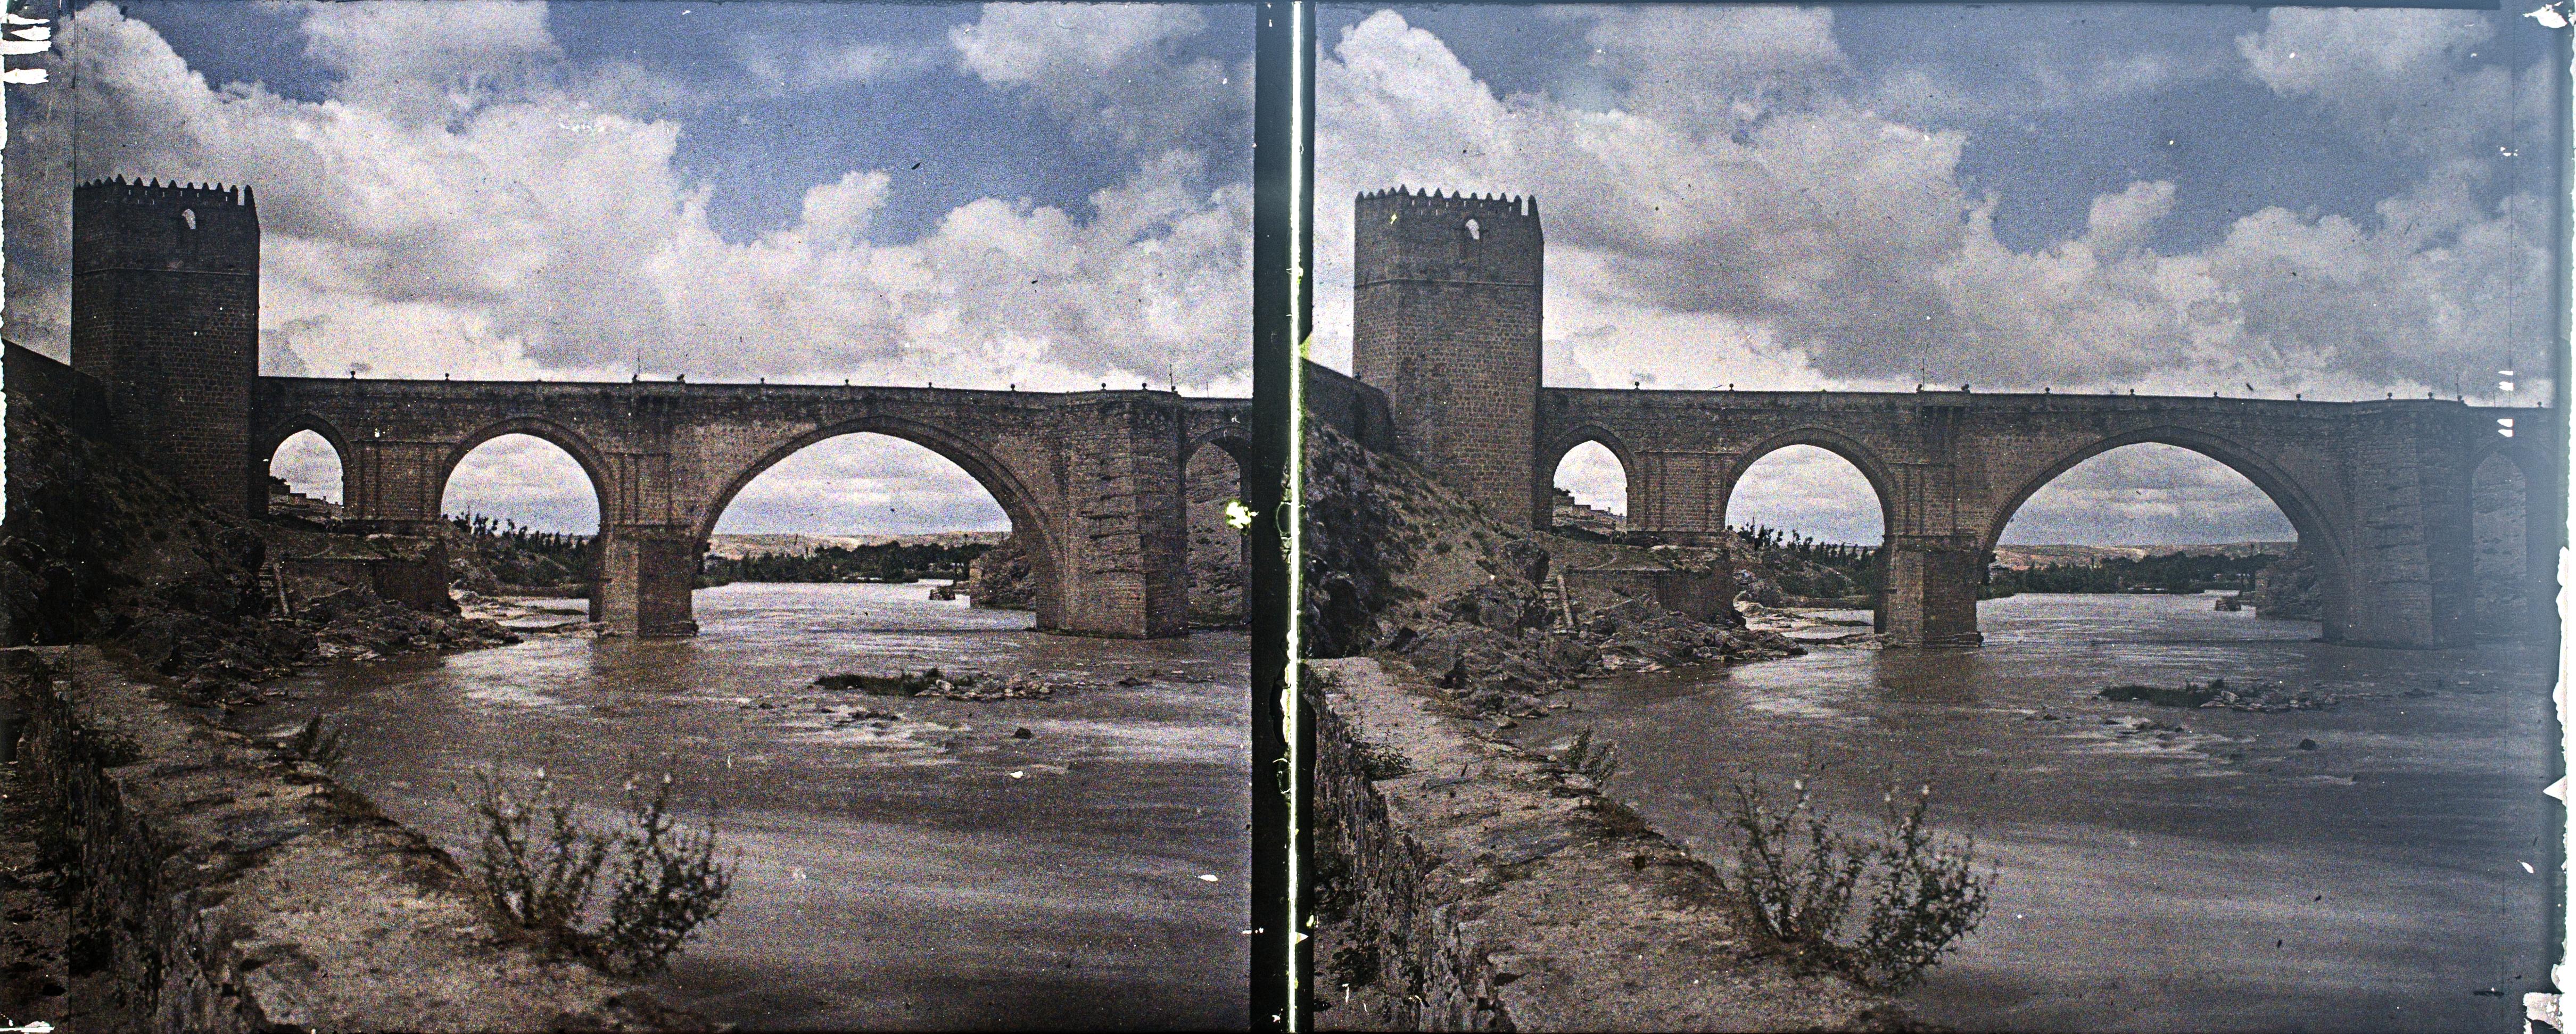 Puente de San Martín, autocromo tomado hacia 1910. Fotografía de Francisco Rodríguez Avial © Herederos de Francisco Rodríguez Avial